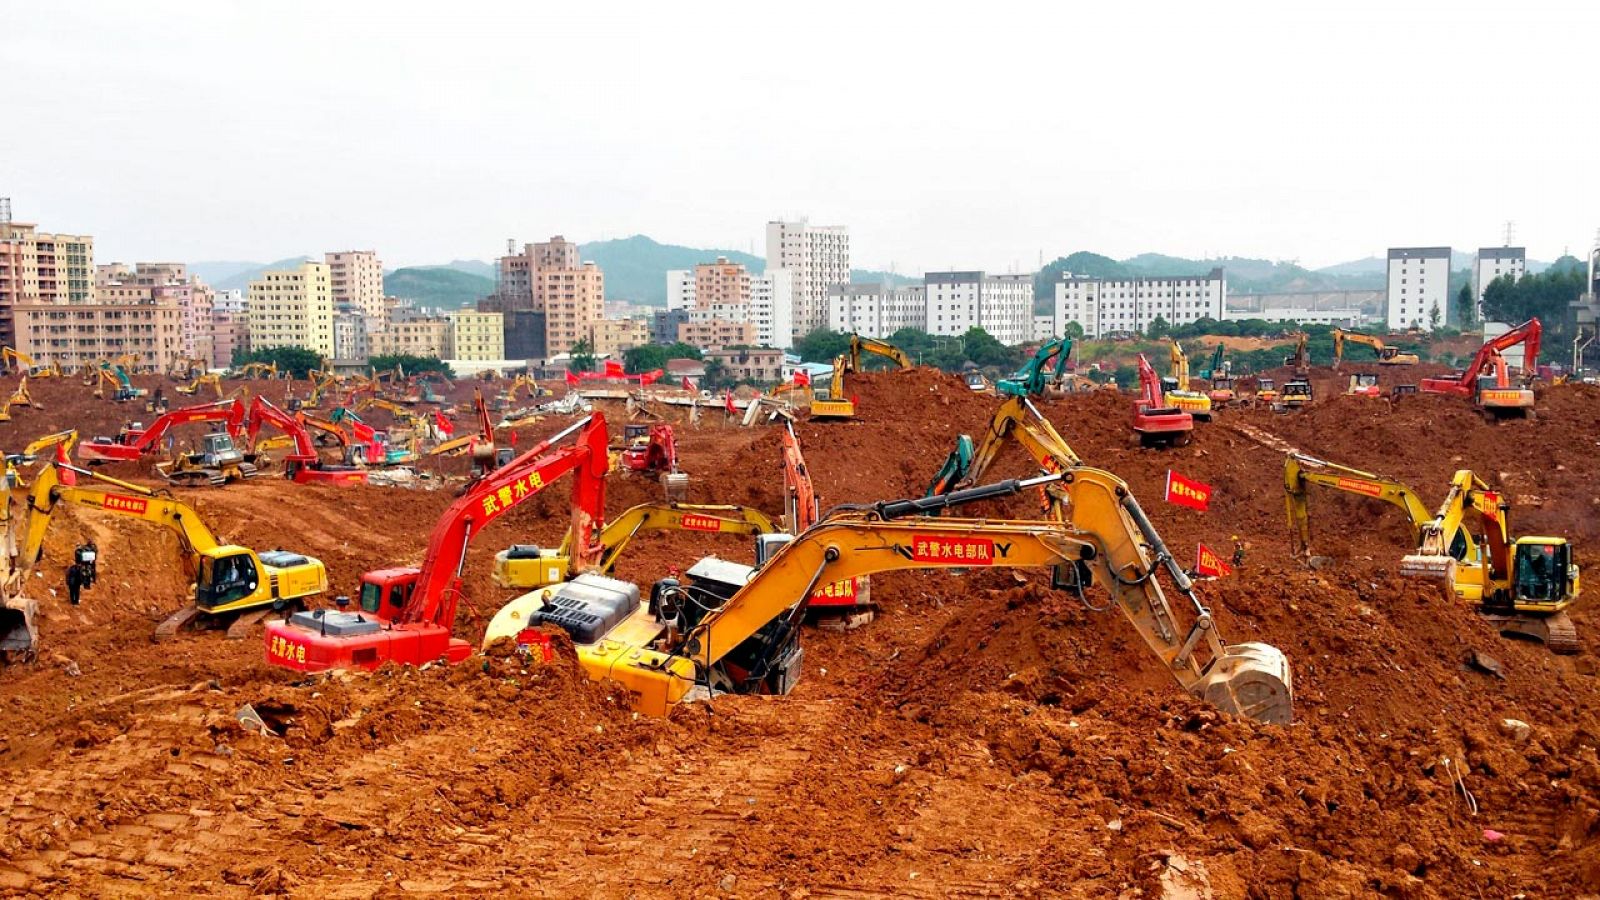 Las excavadoras retiran los escombros en la ciudad china de Shenzhen